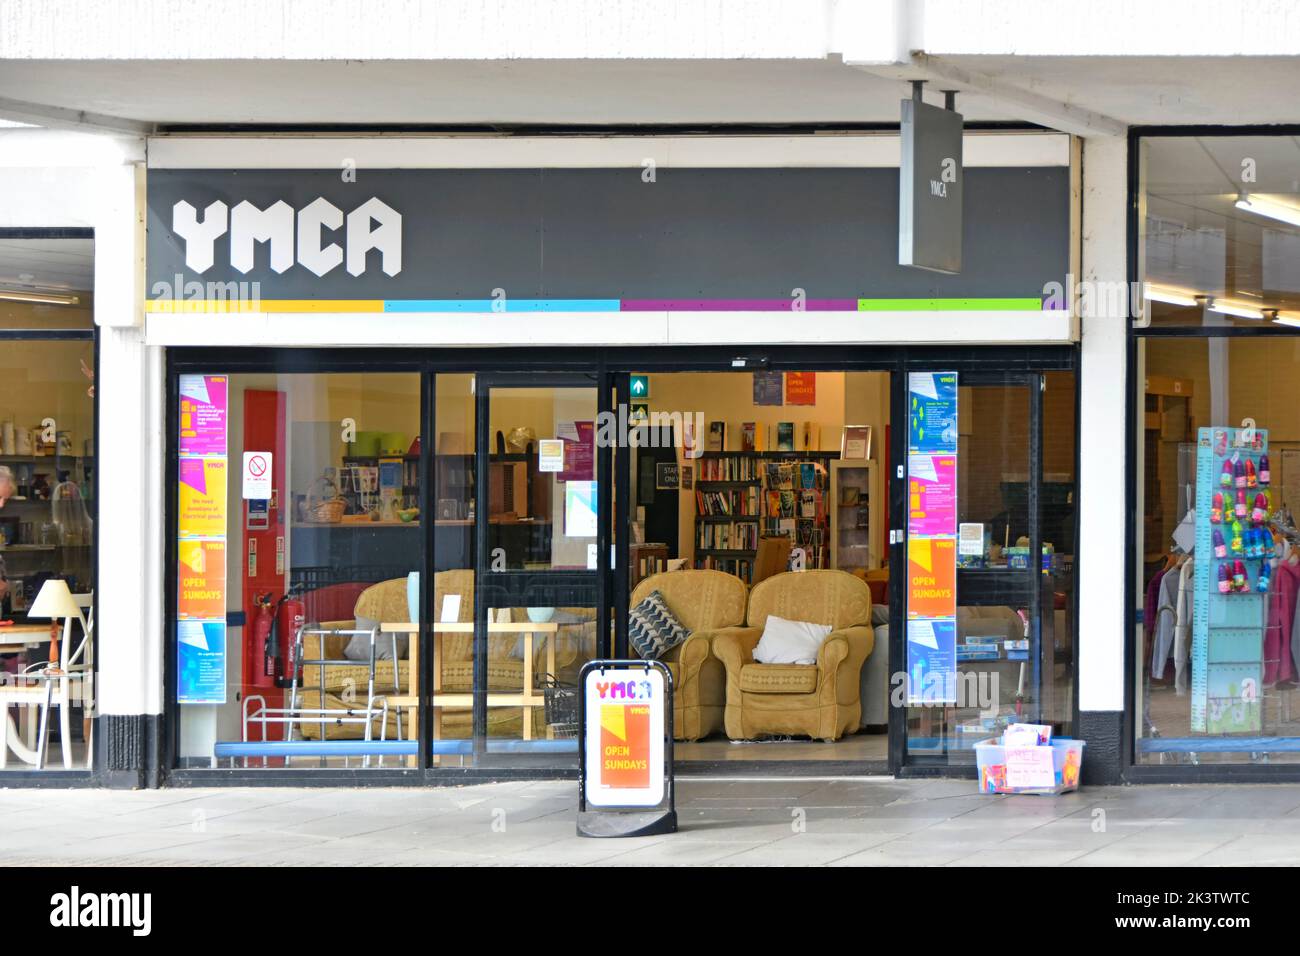 YMCA Young Men's Christian Association fund craising charity shop vende mercancía nacional donada centro comercial al aire libre en Witham Essex, Inglaterra, Reino Unido Foto de stock